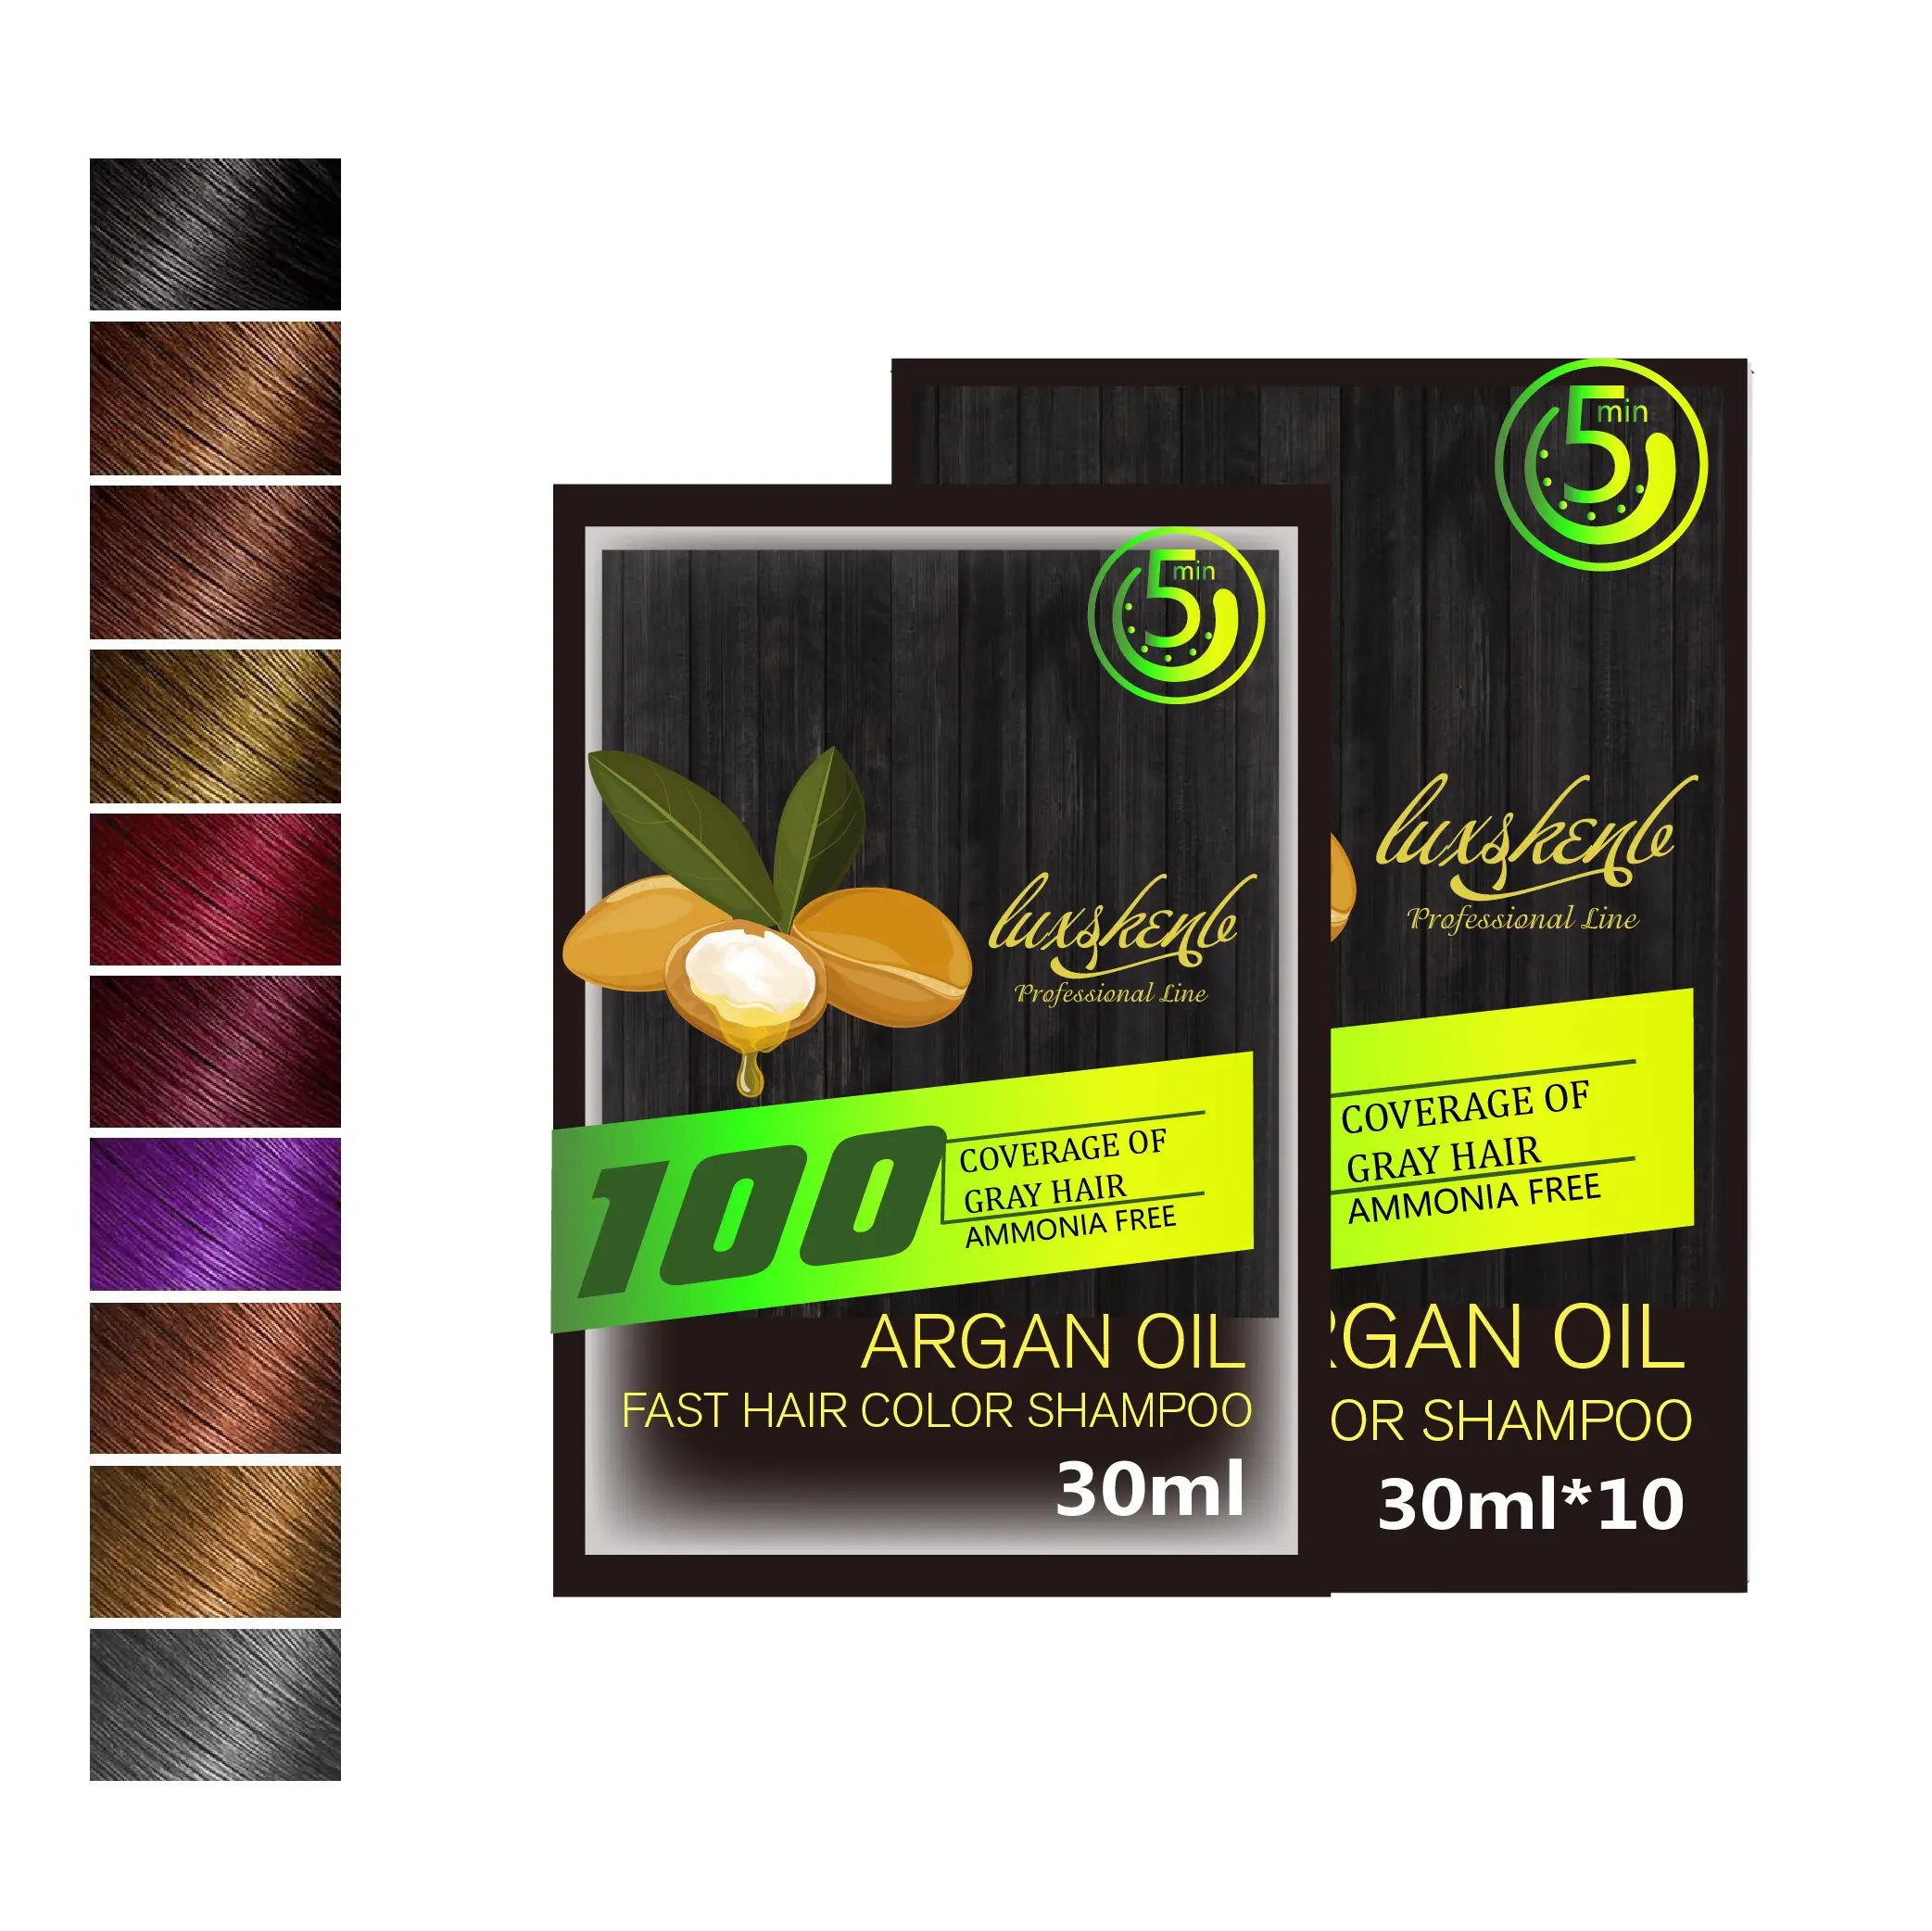 צמחי צמחים טבעיים שמן ארגן קצף צבעי שיער צבעי שיער לא אלרגיים תיק חומרים כפולים 2IN1 שקית שמפו צבע שיער צבע שיער